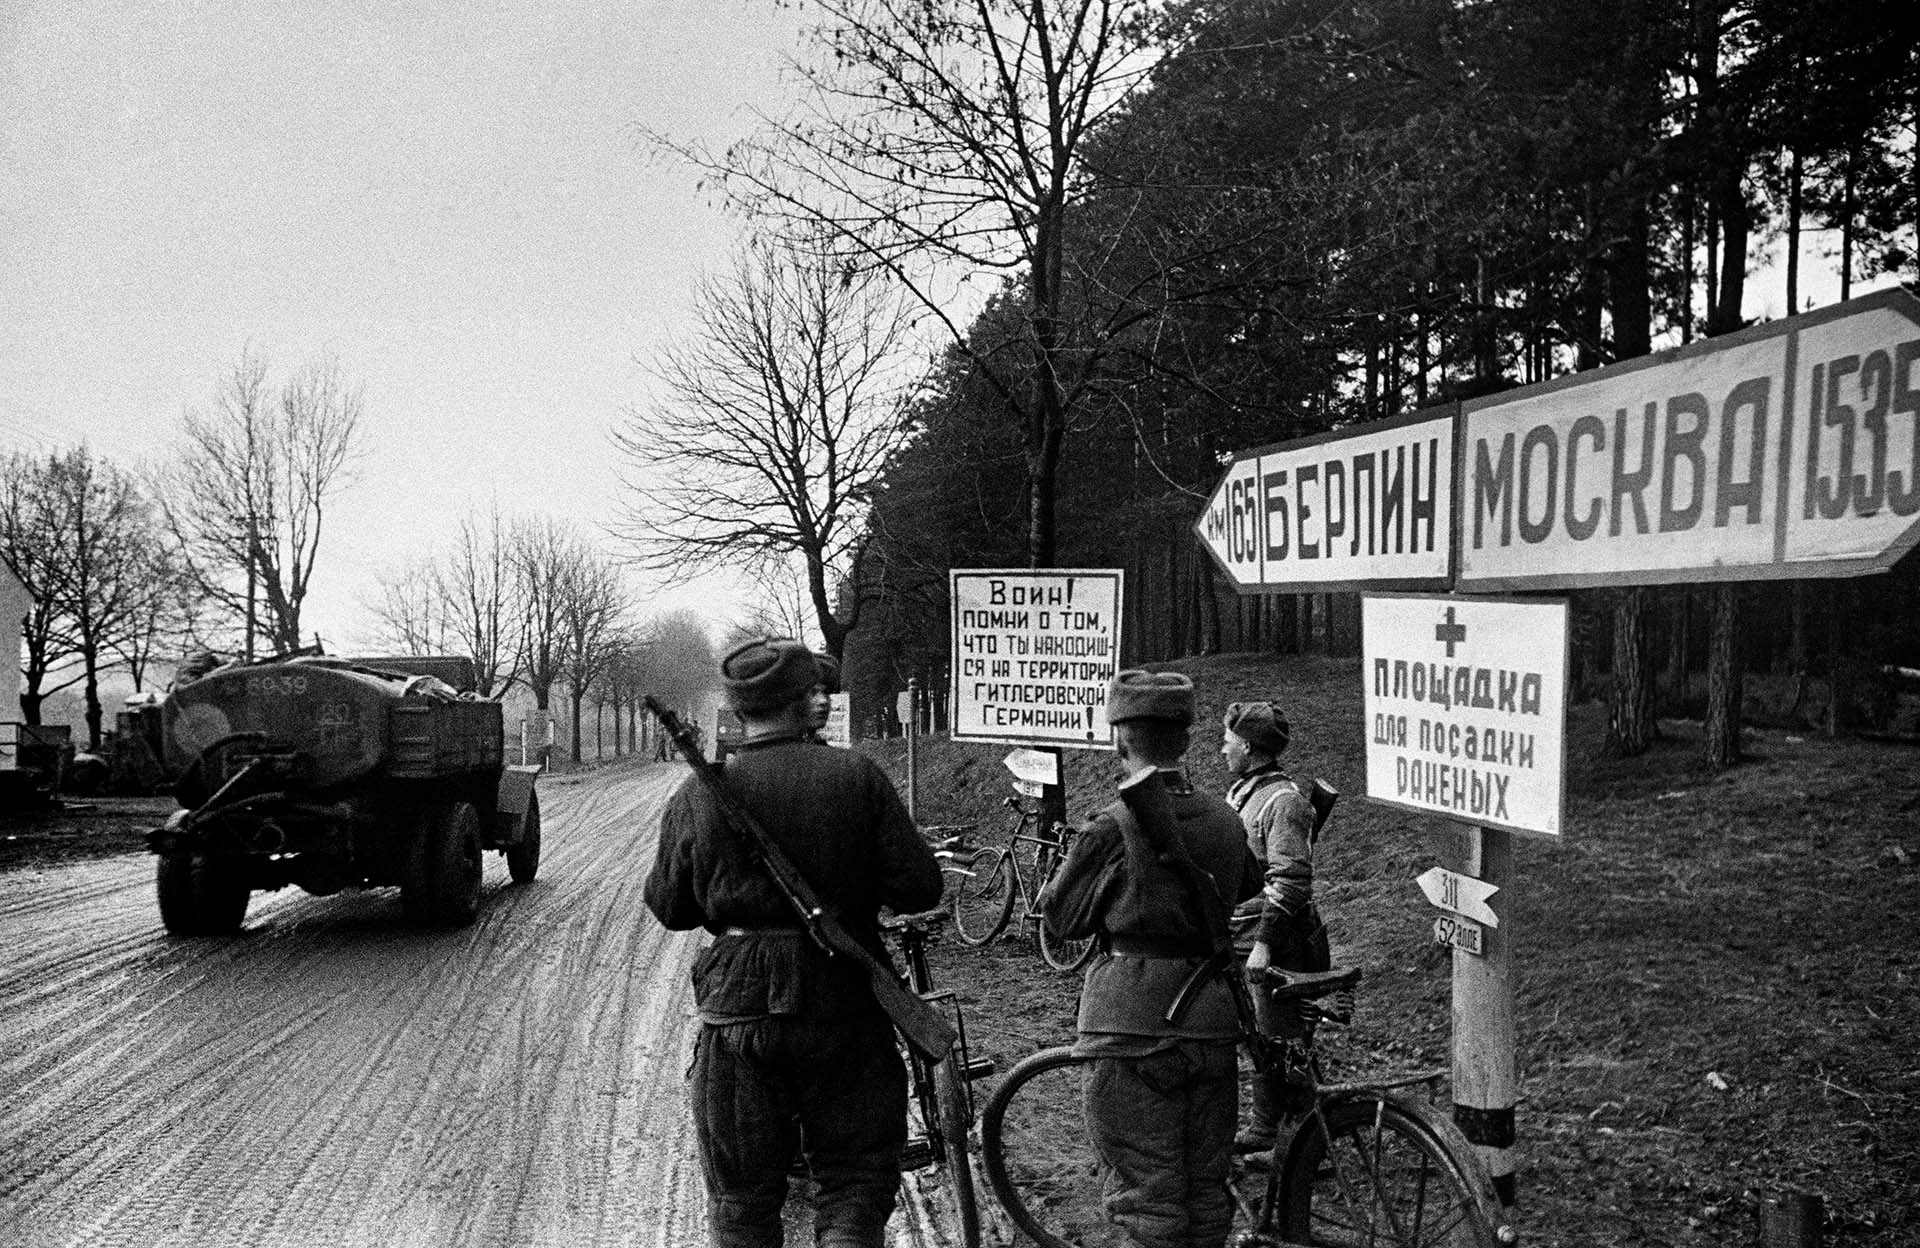 Берлинская наступательная операция, 1945 год. До Берлина осталось 165 км. Надпись на табличке: «Воин! Помни о том, что ты находишься на территории гитлеровской Германии!»